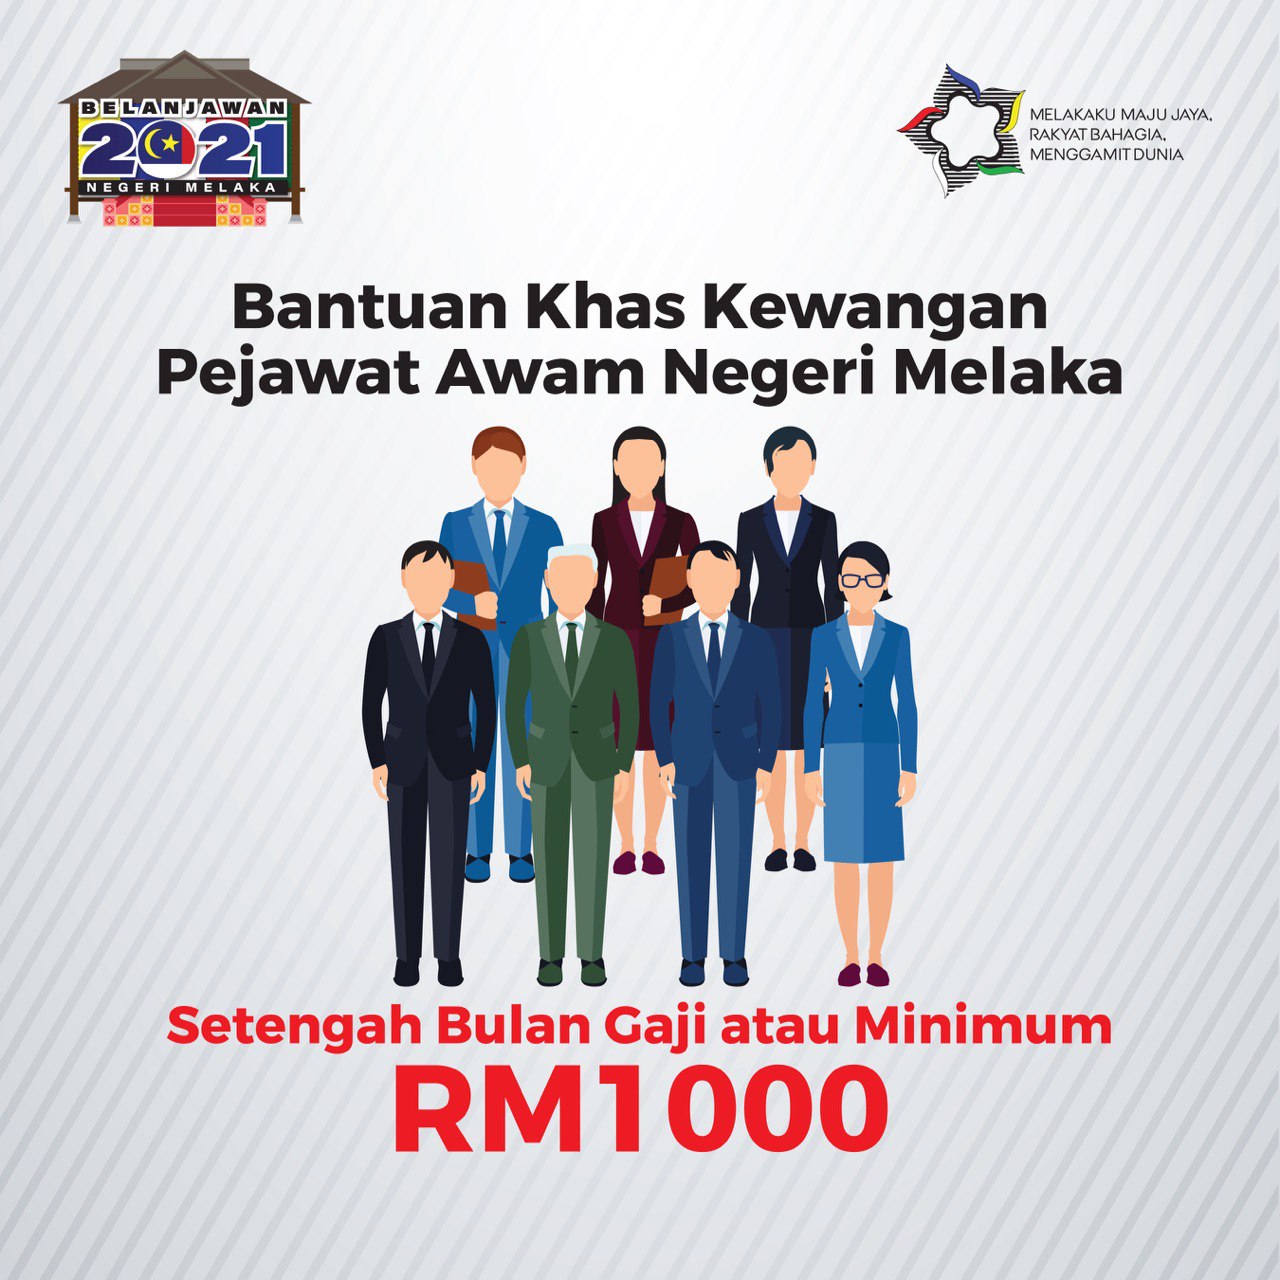 Bantuan khas setengah bulan gaji buat penjawat awam Melaka